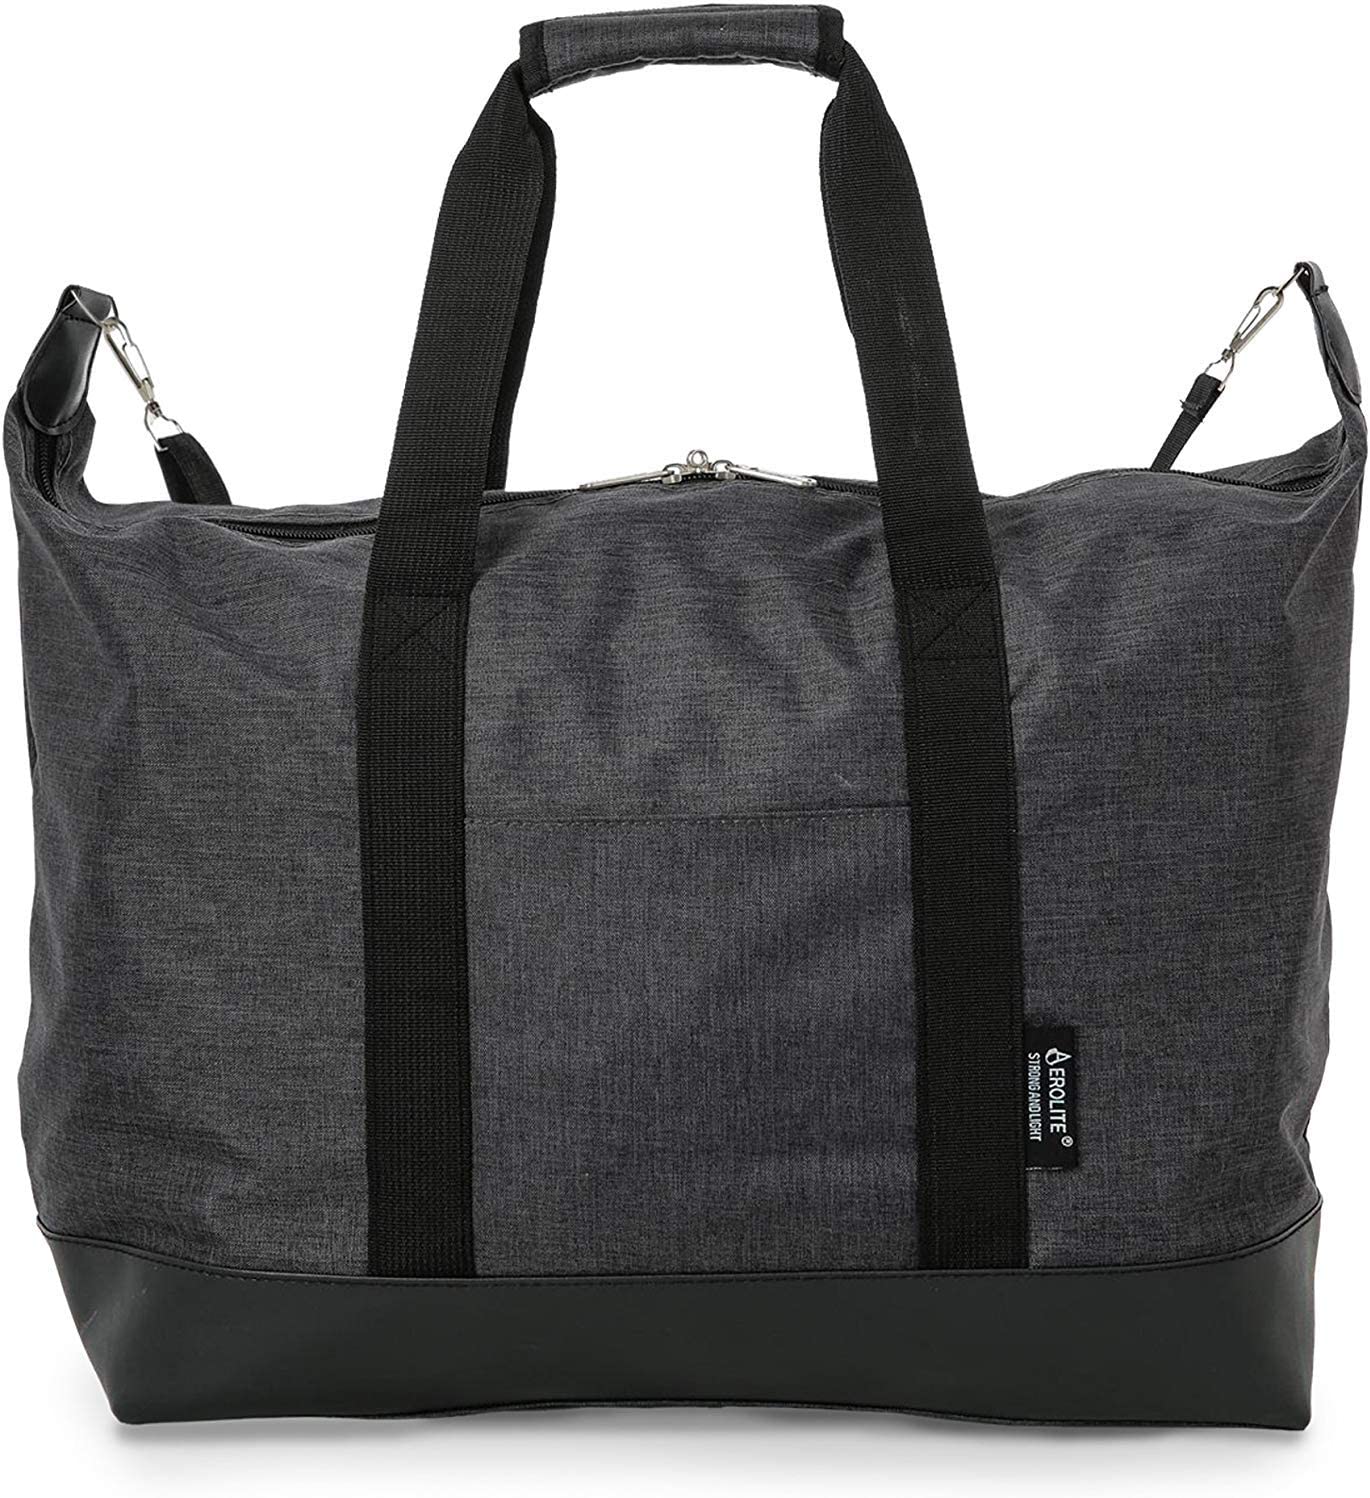 Wholesale Best-Selling Shoulder Bag Women - Lightweight Holdall Hand Cabin Luggage Bag in Black ...